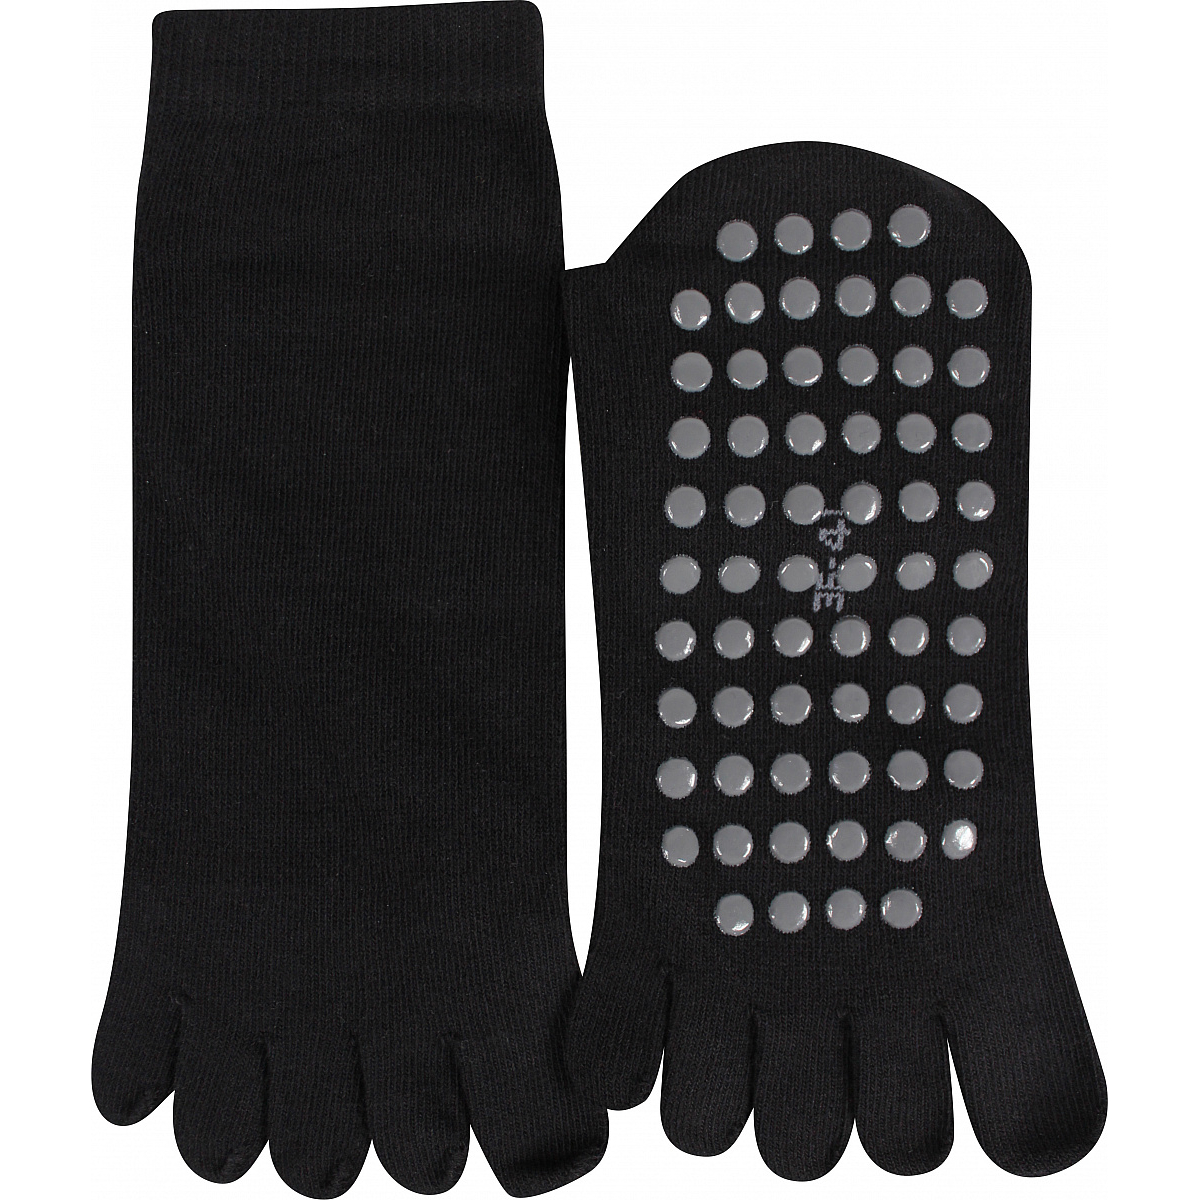 Ponožky snížené prstové Boma Prstan ABS - černé, 42-46